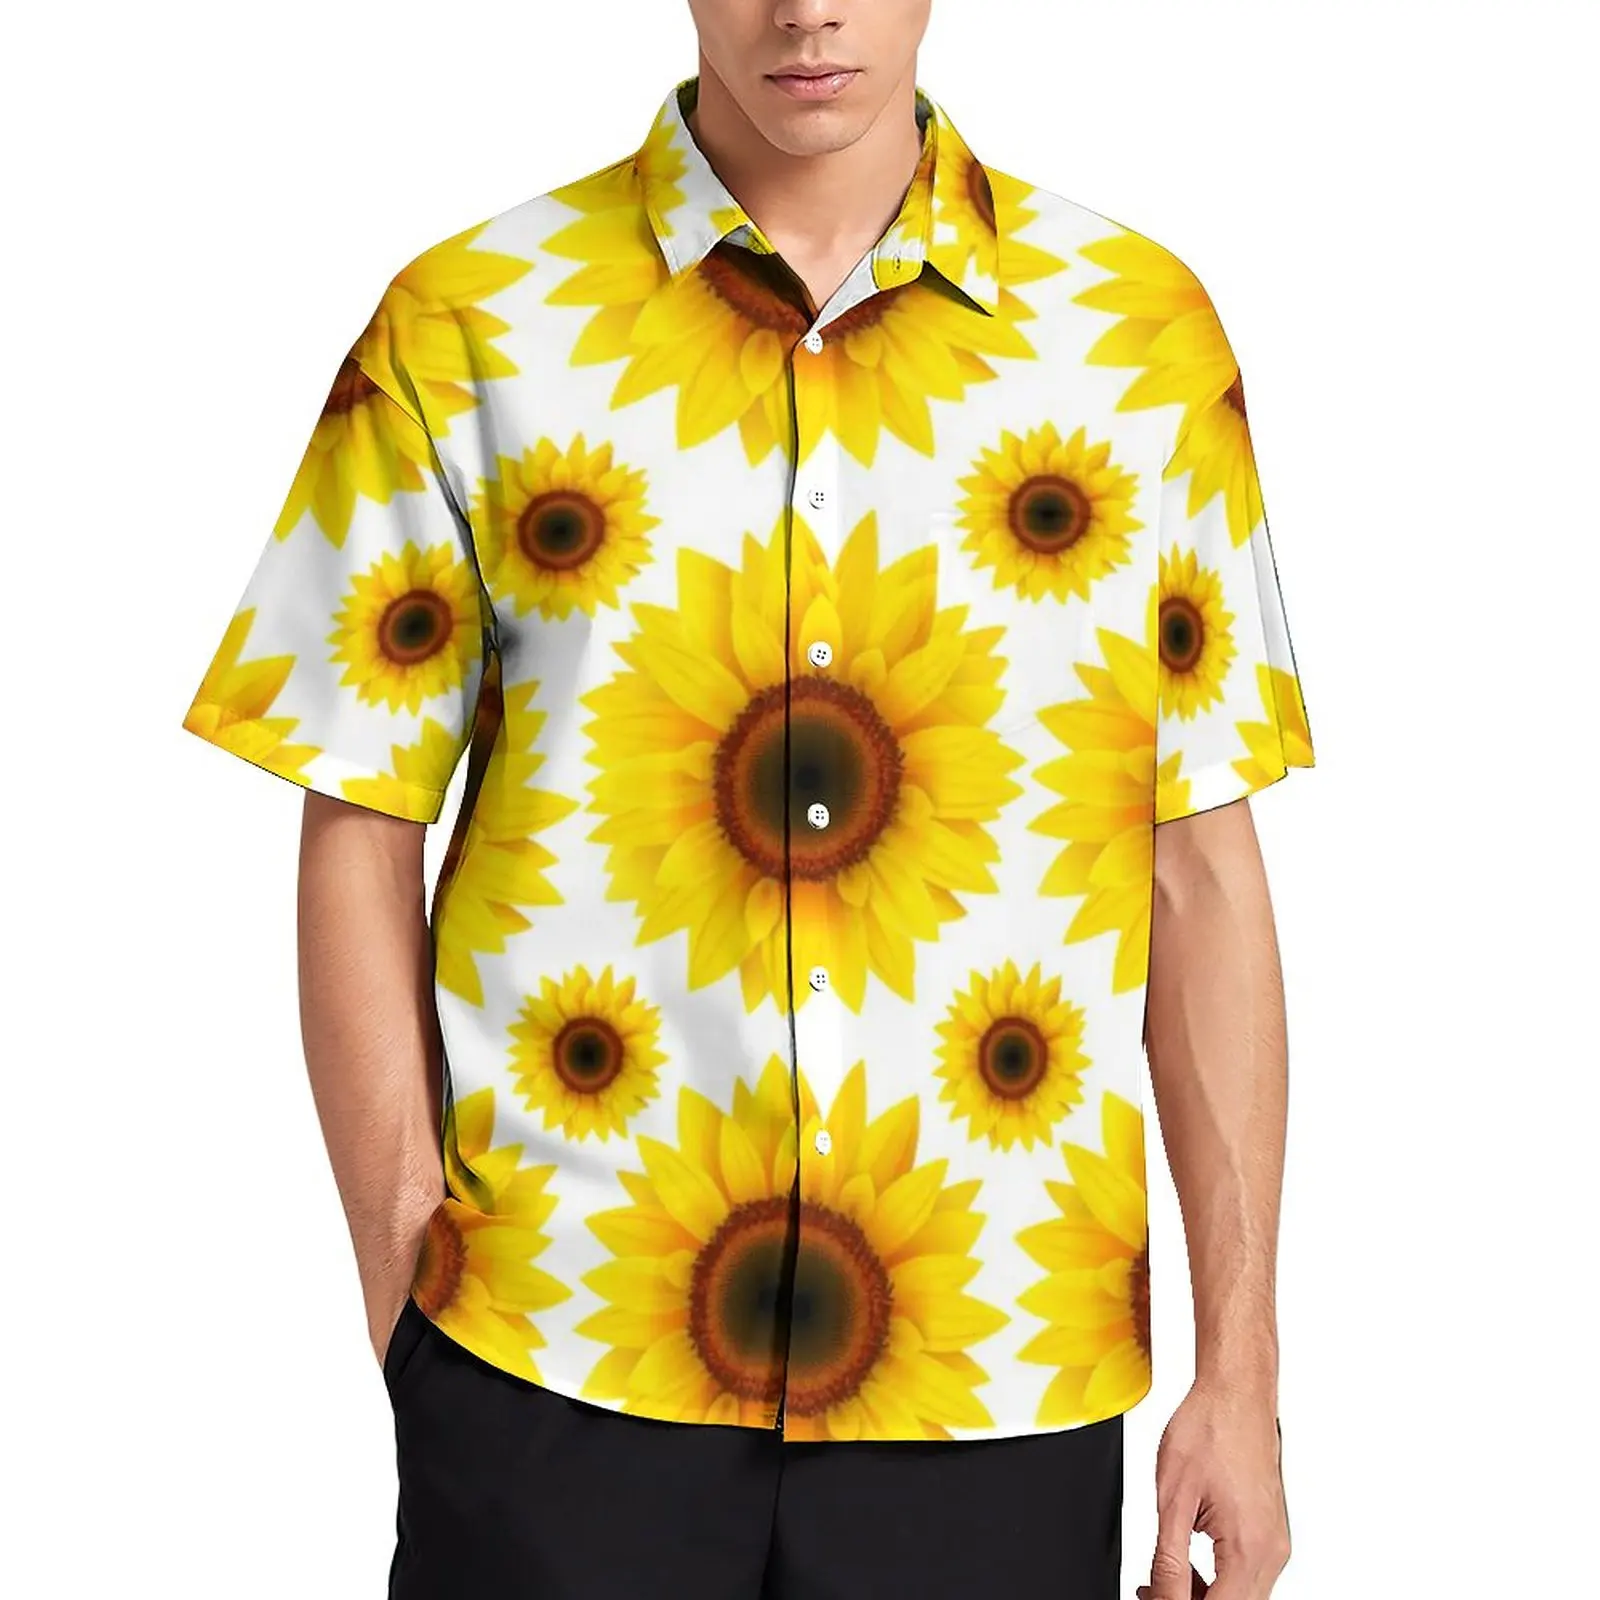 

Веселая рубашка с подсолнухами для отпуска желтая модель Гавайская Повседневная рубашка эстетичные блузки с коротким рукавом